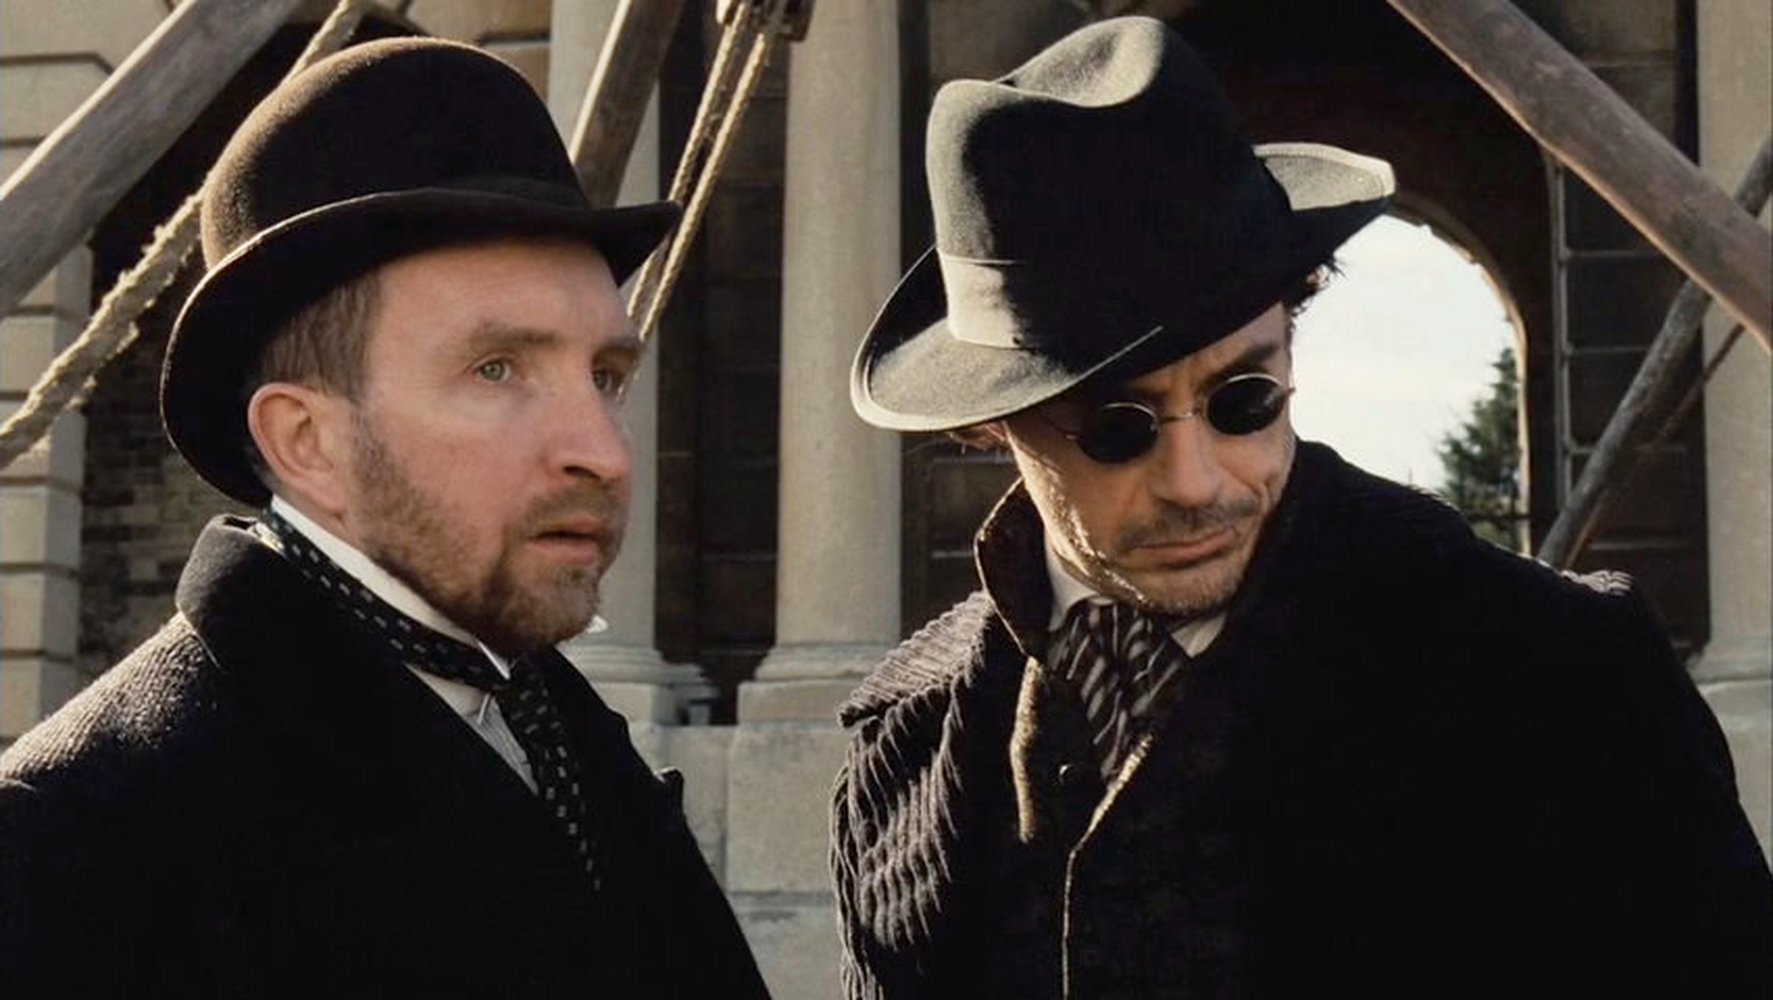 Инспектор из истории о шерлоке холмсе. Лестрейд из Шерлока Холмса с Робертом Дауни младшим.